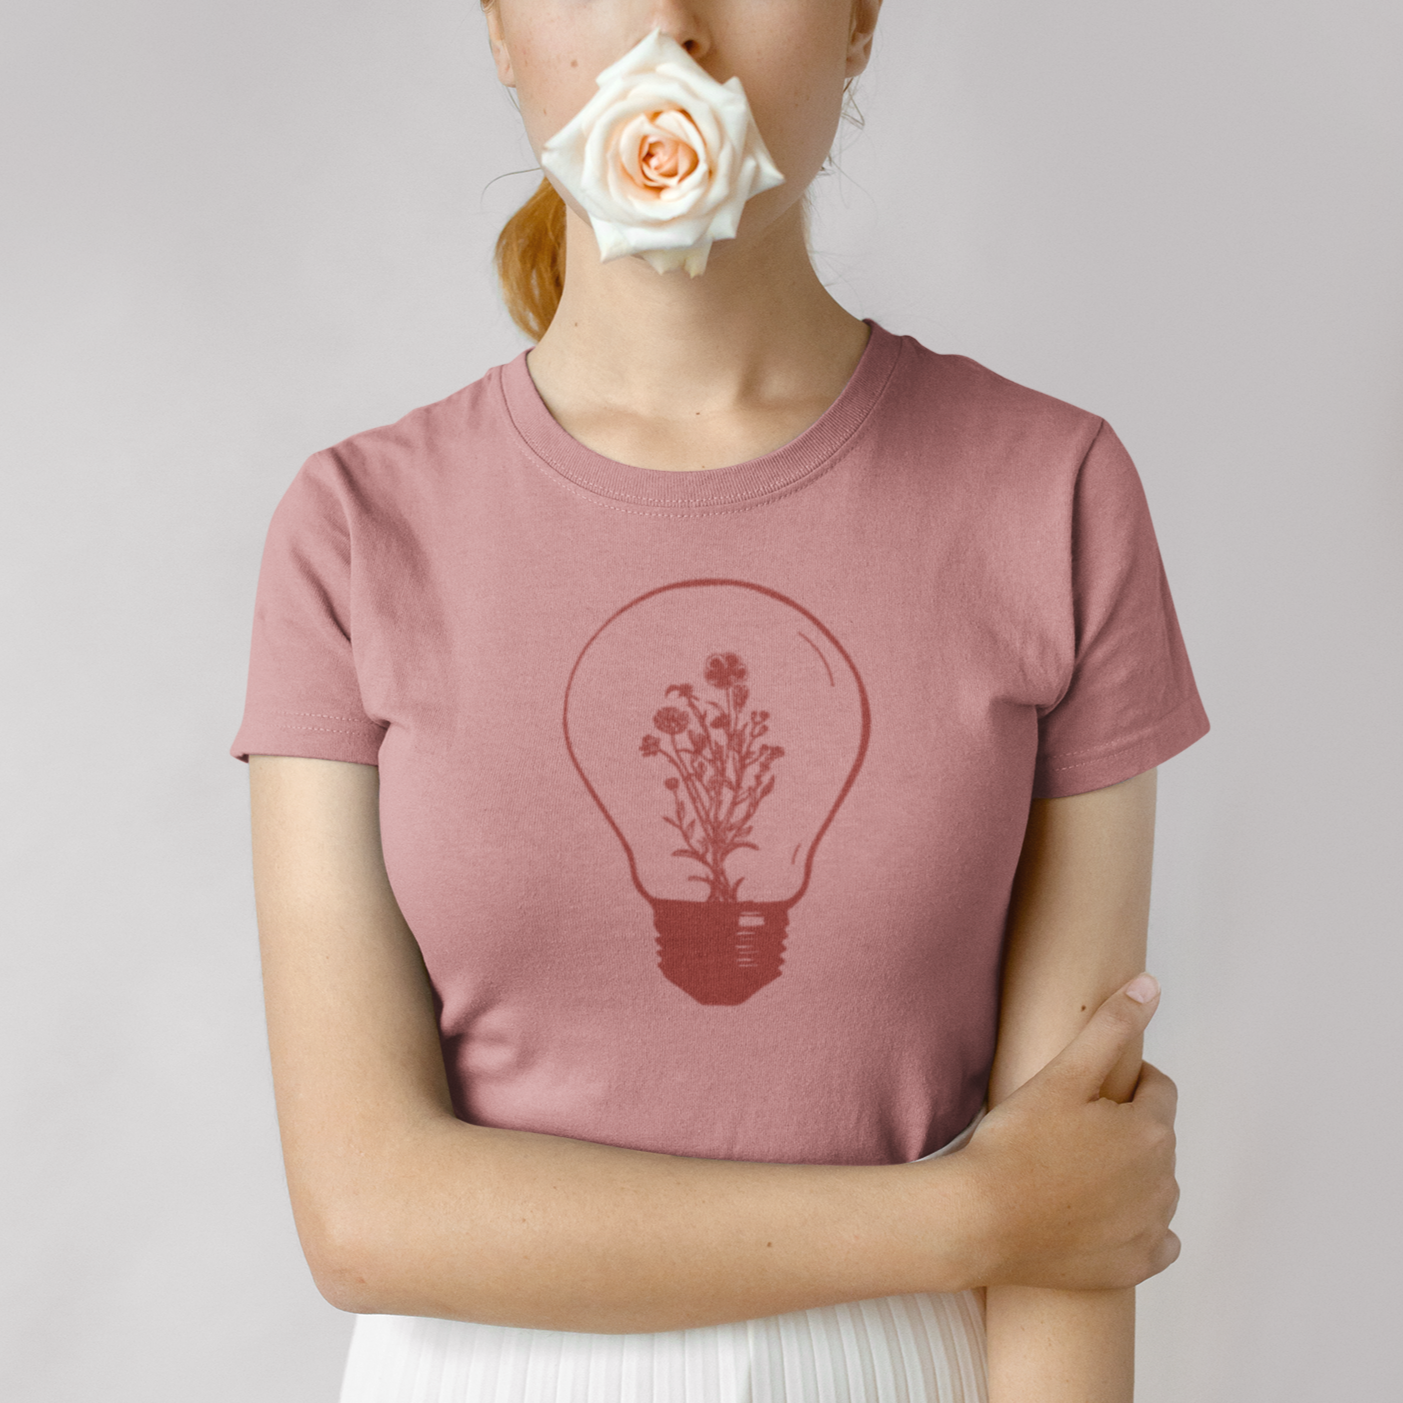 Floral bulb - T-shirt - Woman - Unisex